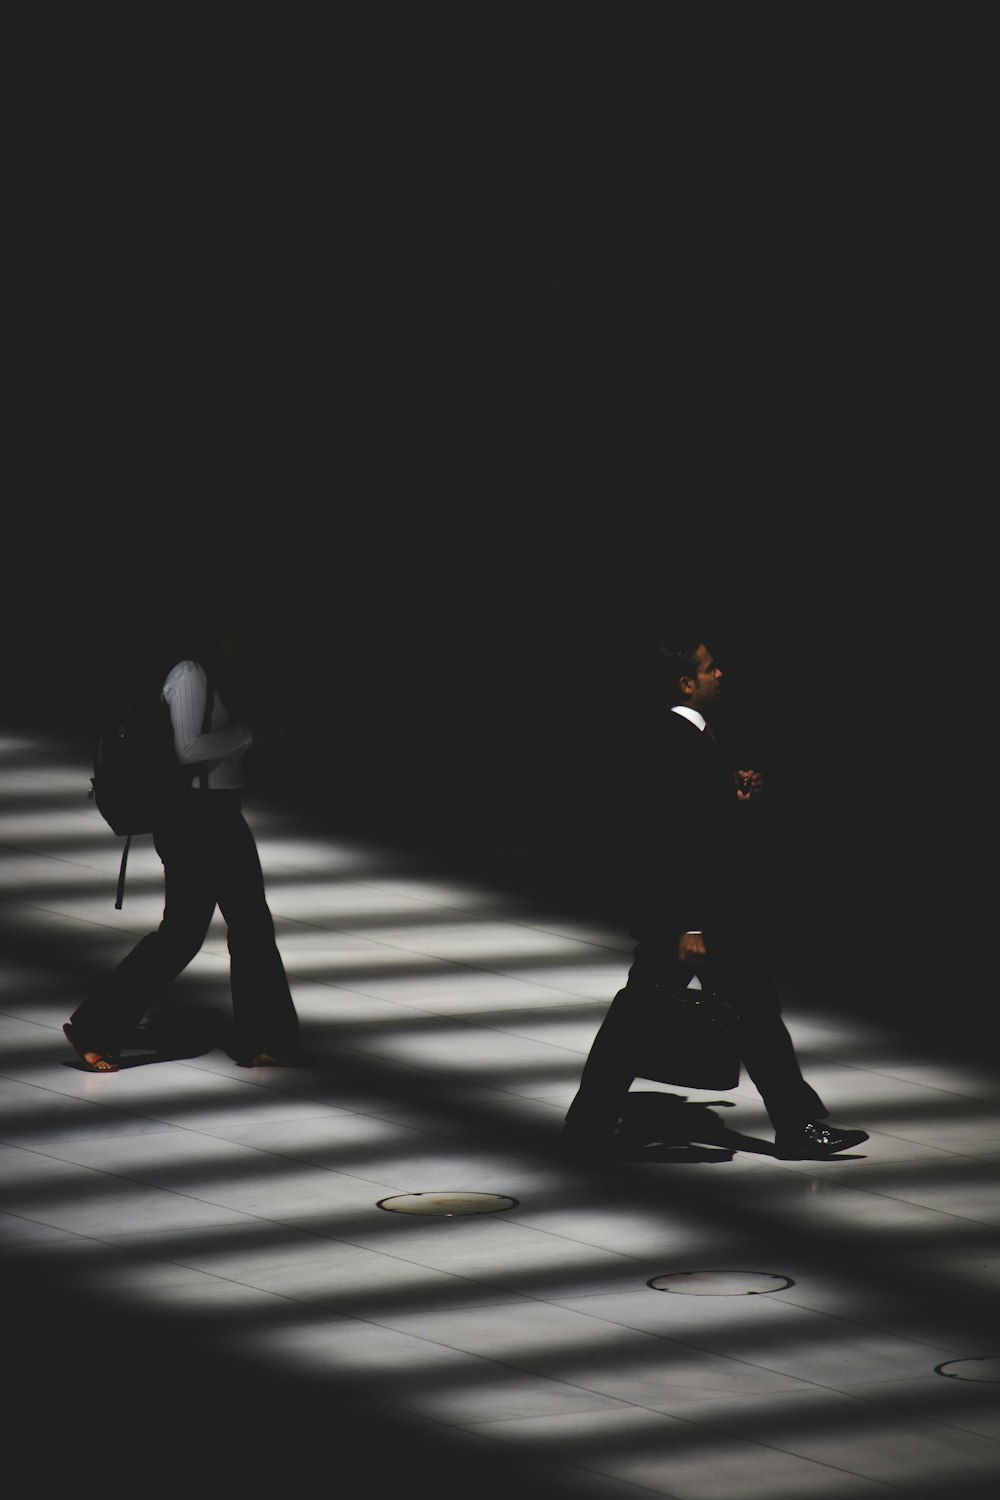 deux personnes marchant à l’intérieur du bâtiment avec un éclairage noir